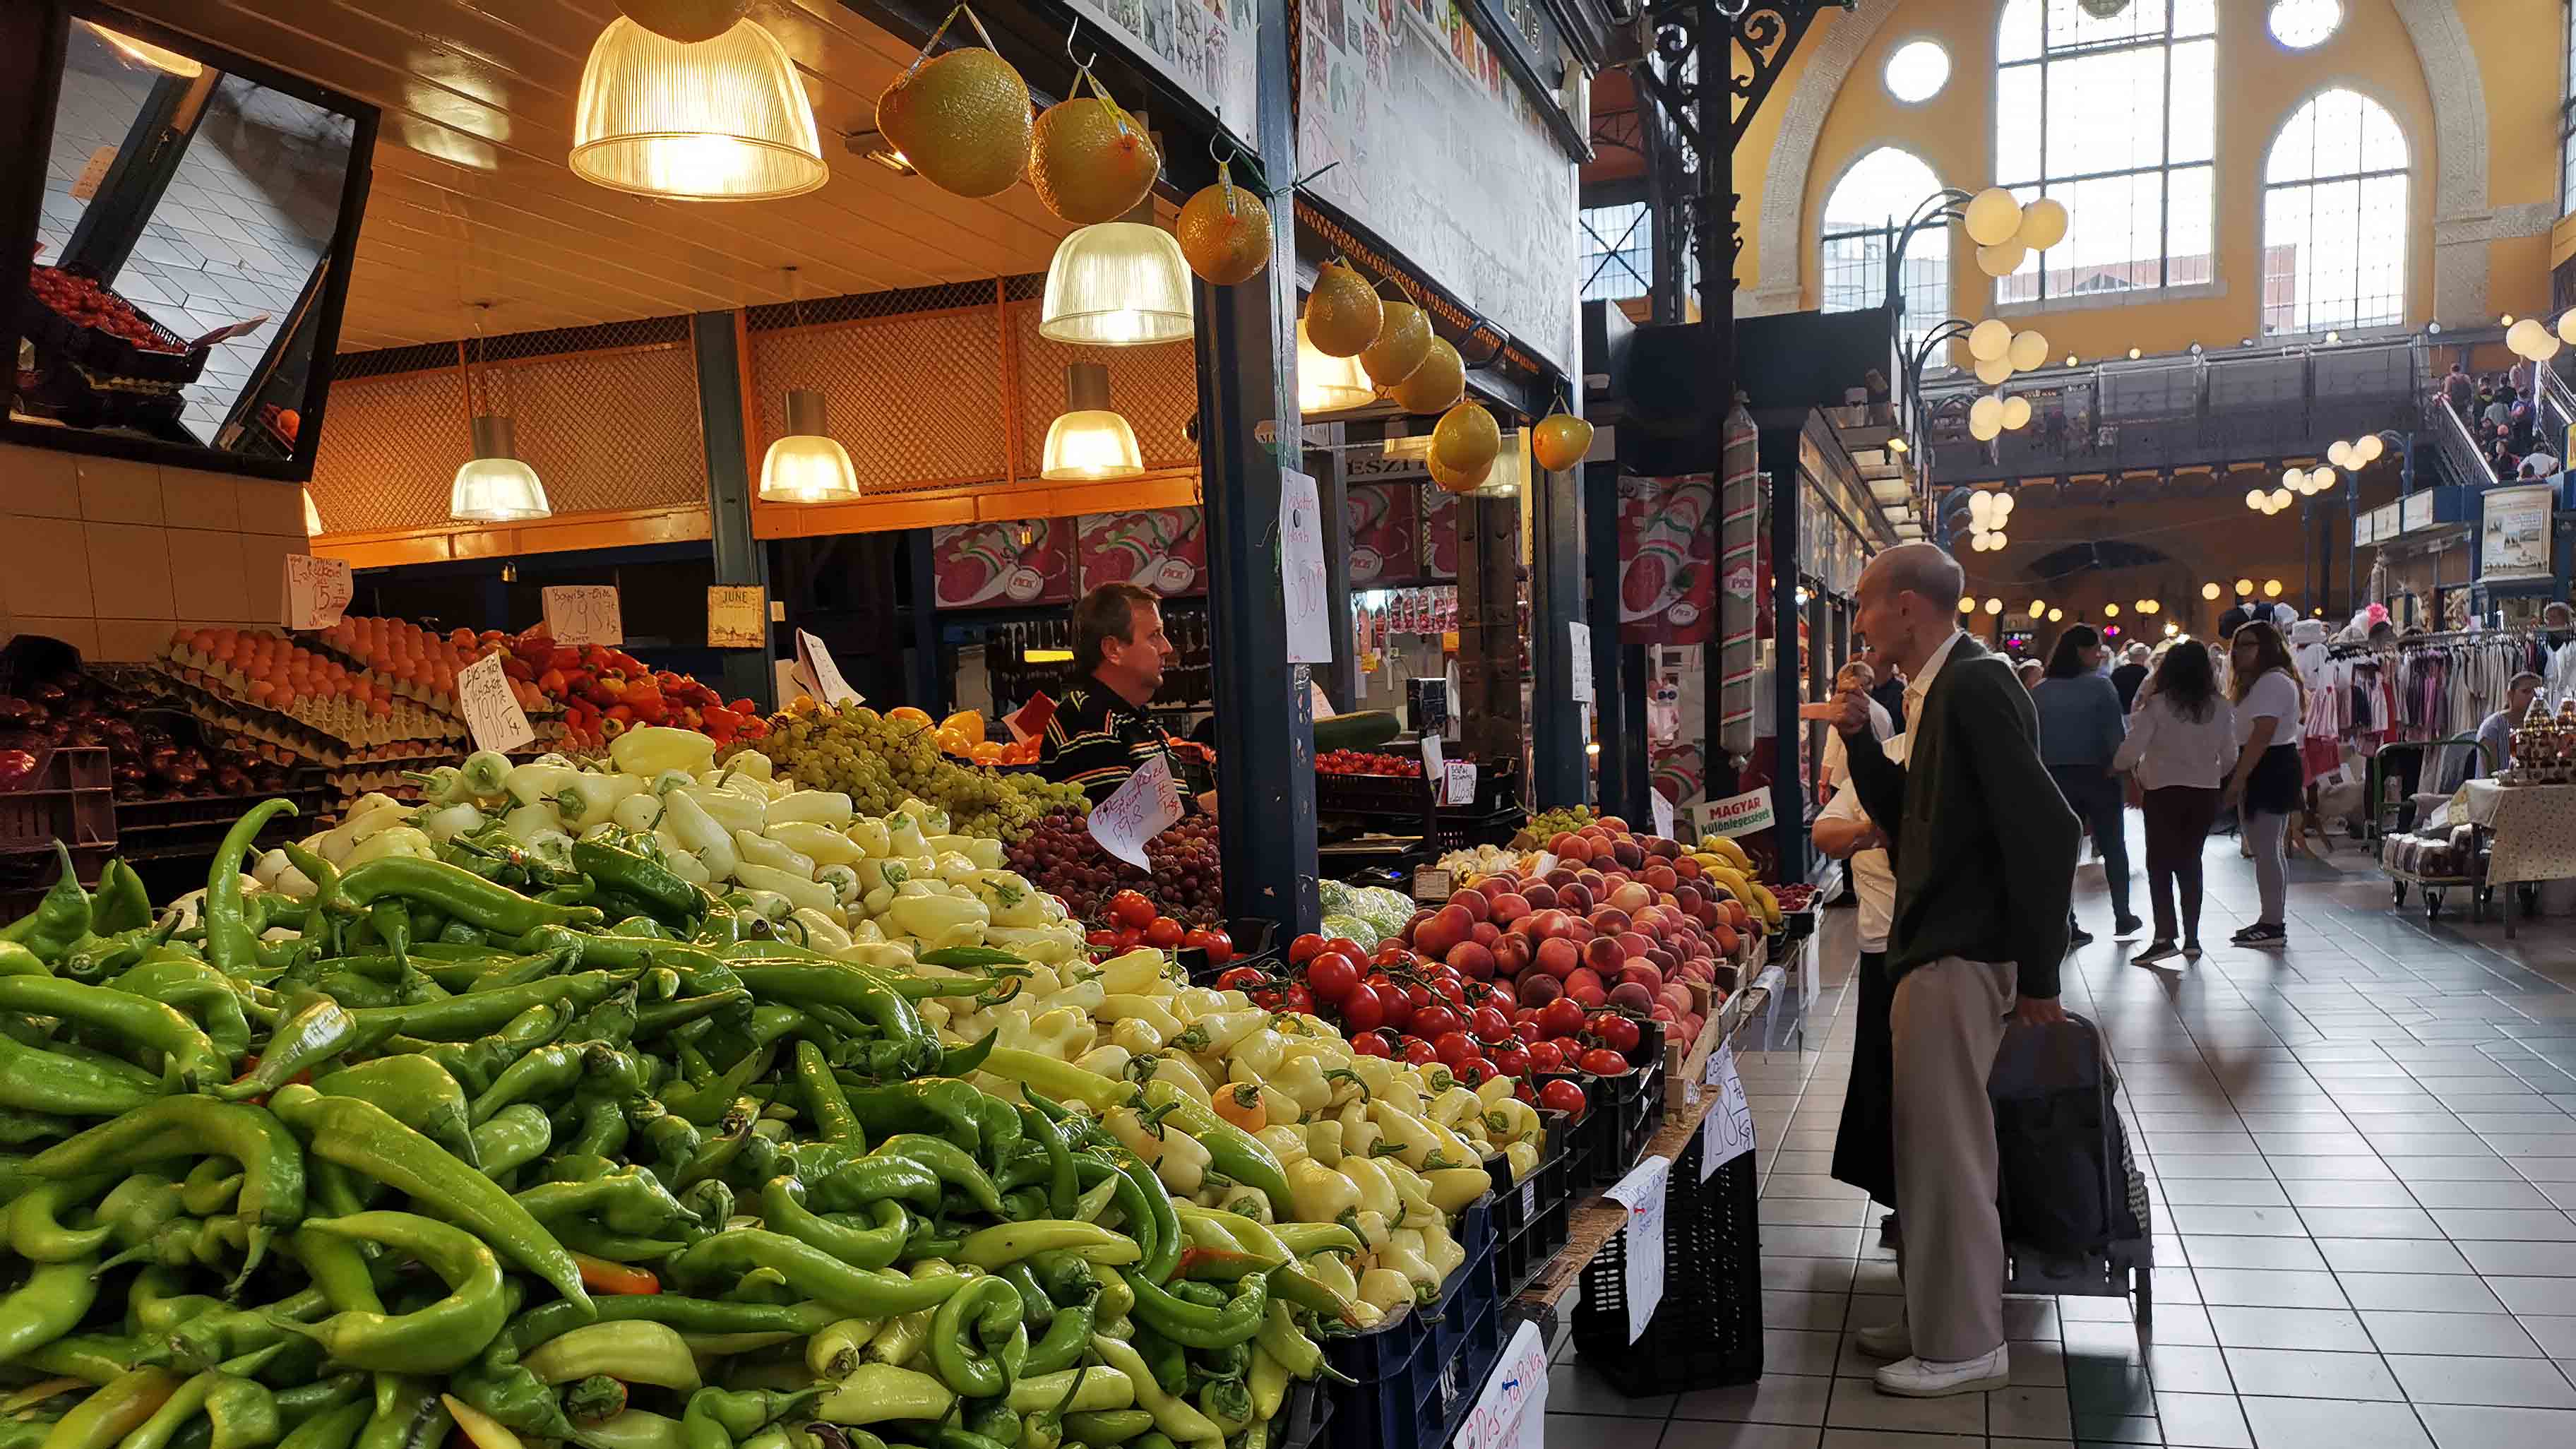 Большой рыночный зал Будапешта Fővám tér торговля овощами и фруктами